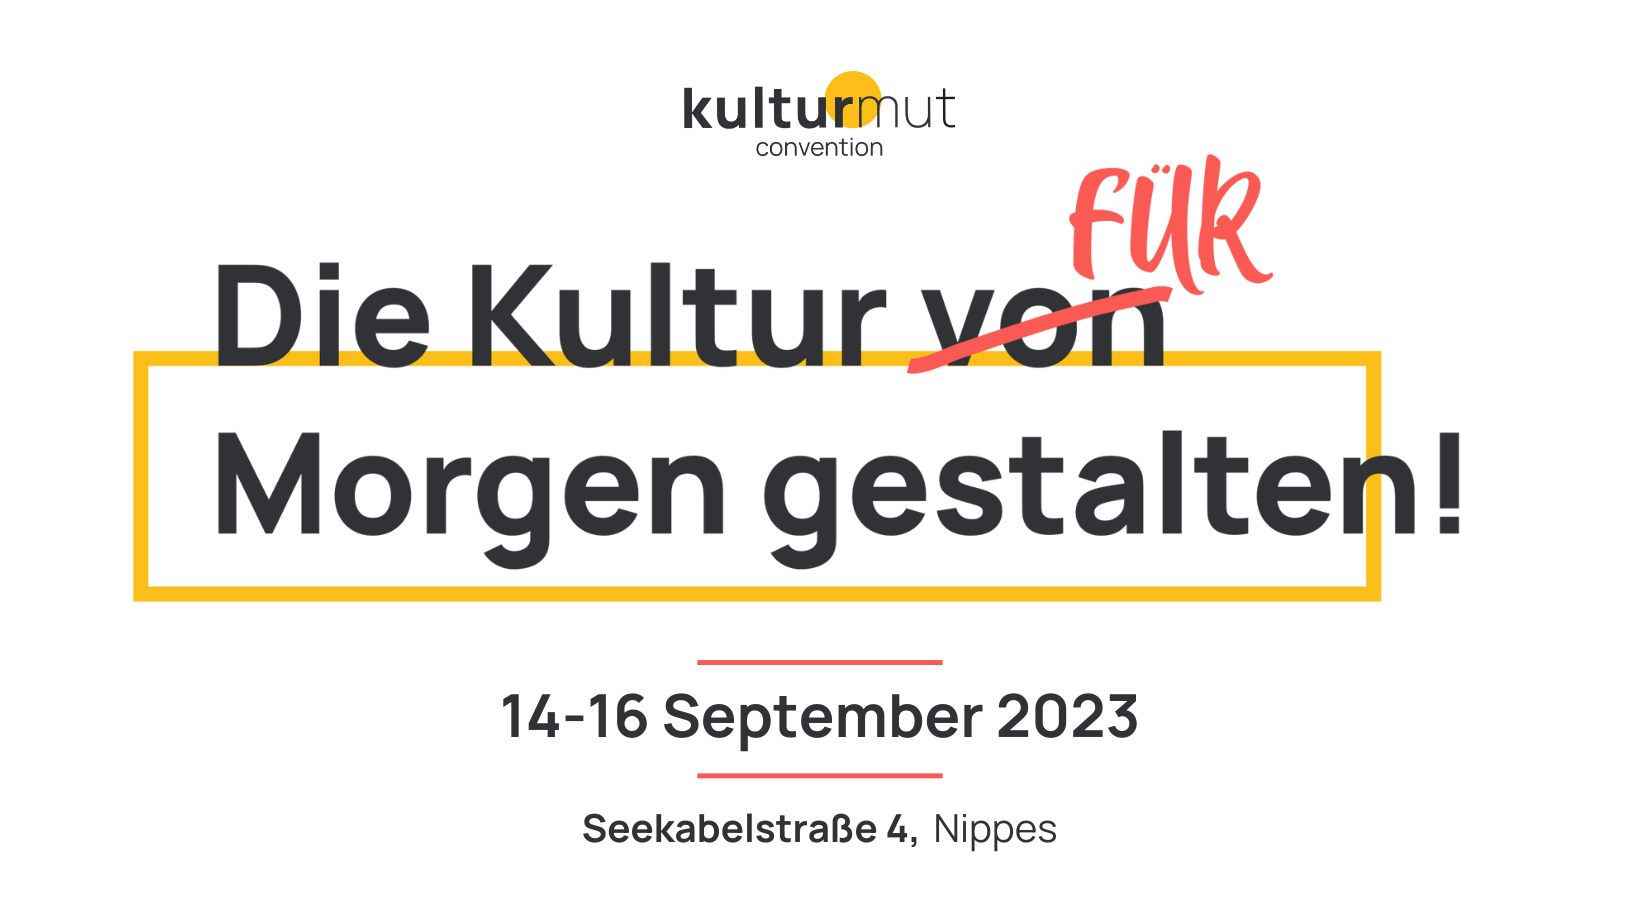 Die Kultur für Morgen gestalten! 14-16 September 2023. Seekabelstraße 4, Köln Nippes.